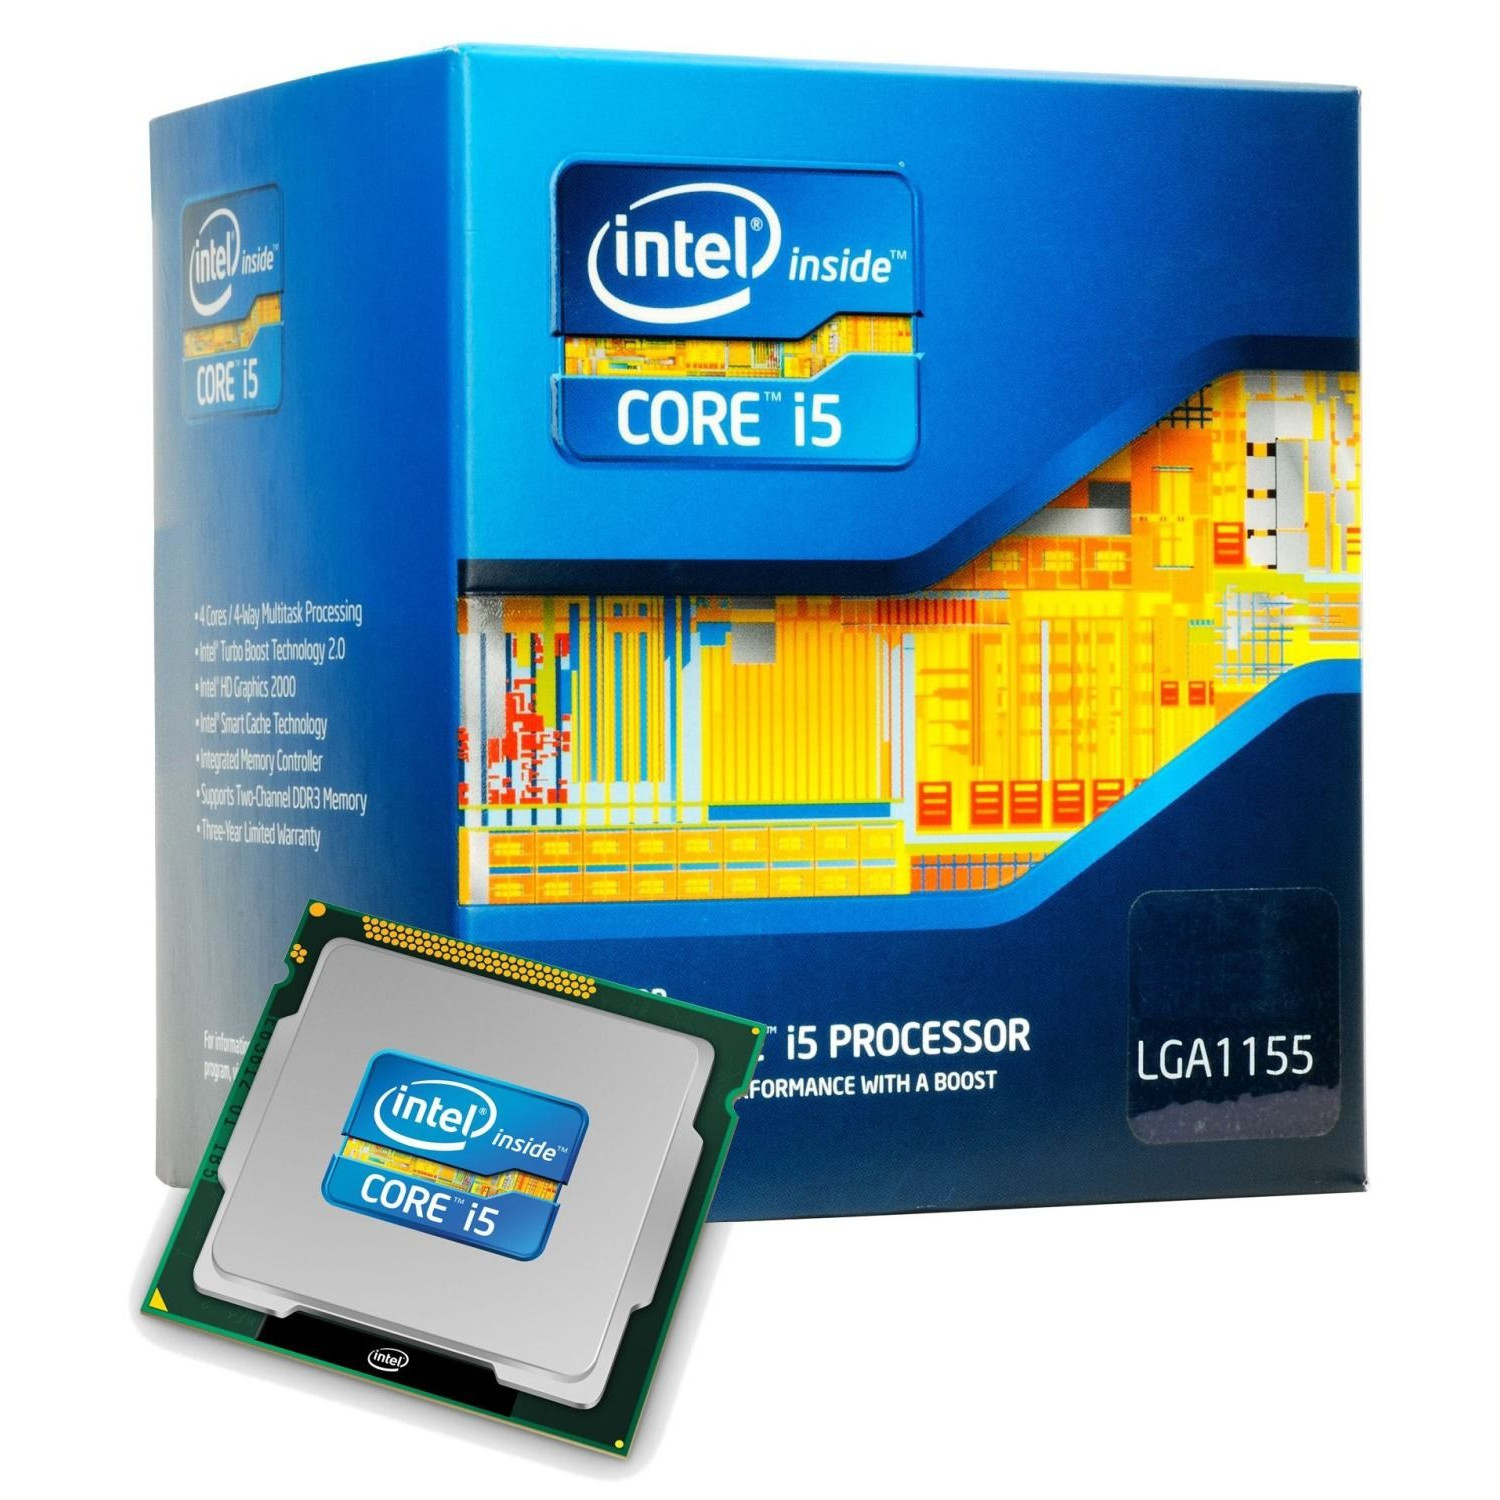 Bộ vi xử lý CPU INTEL Core I5 3470 3.2Ghz - Hàng nhập khẩu